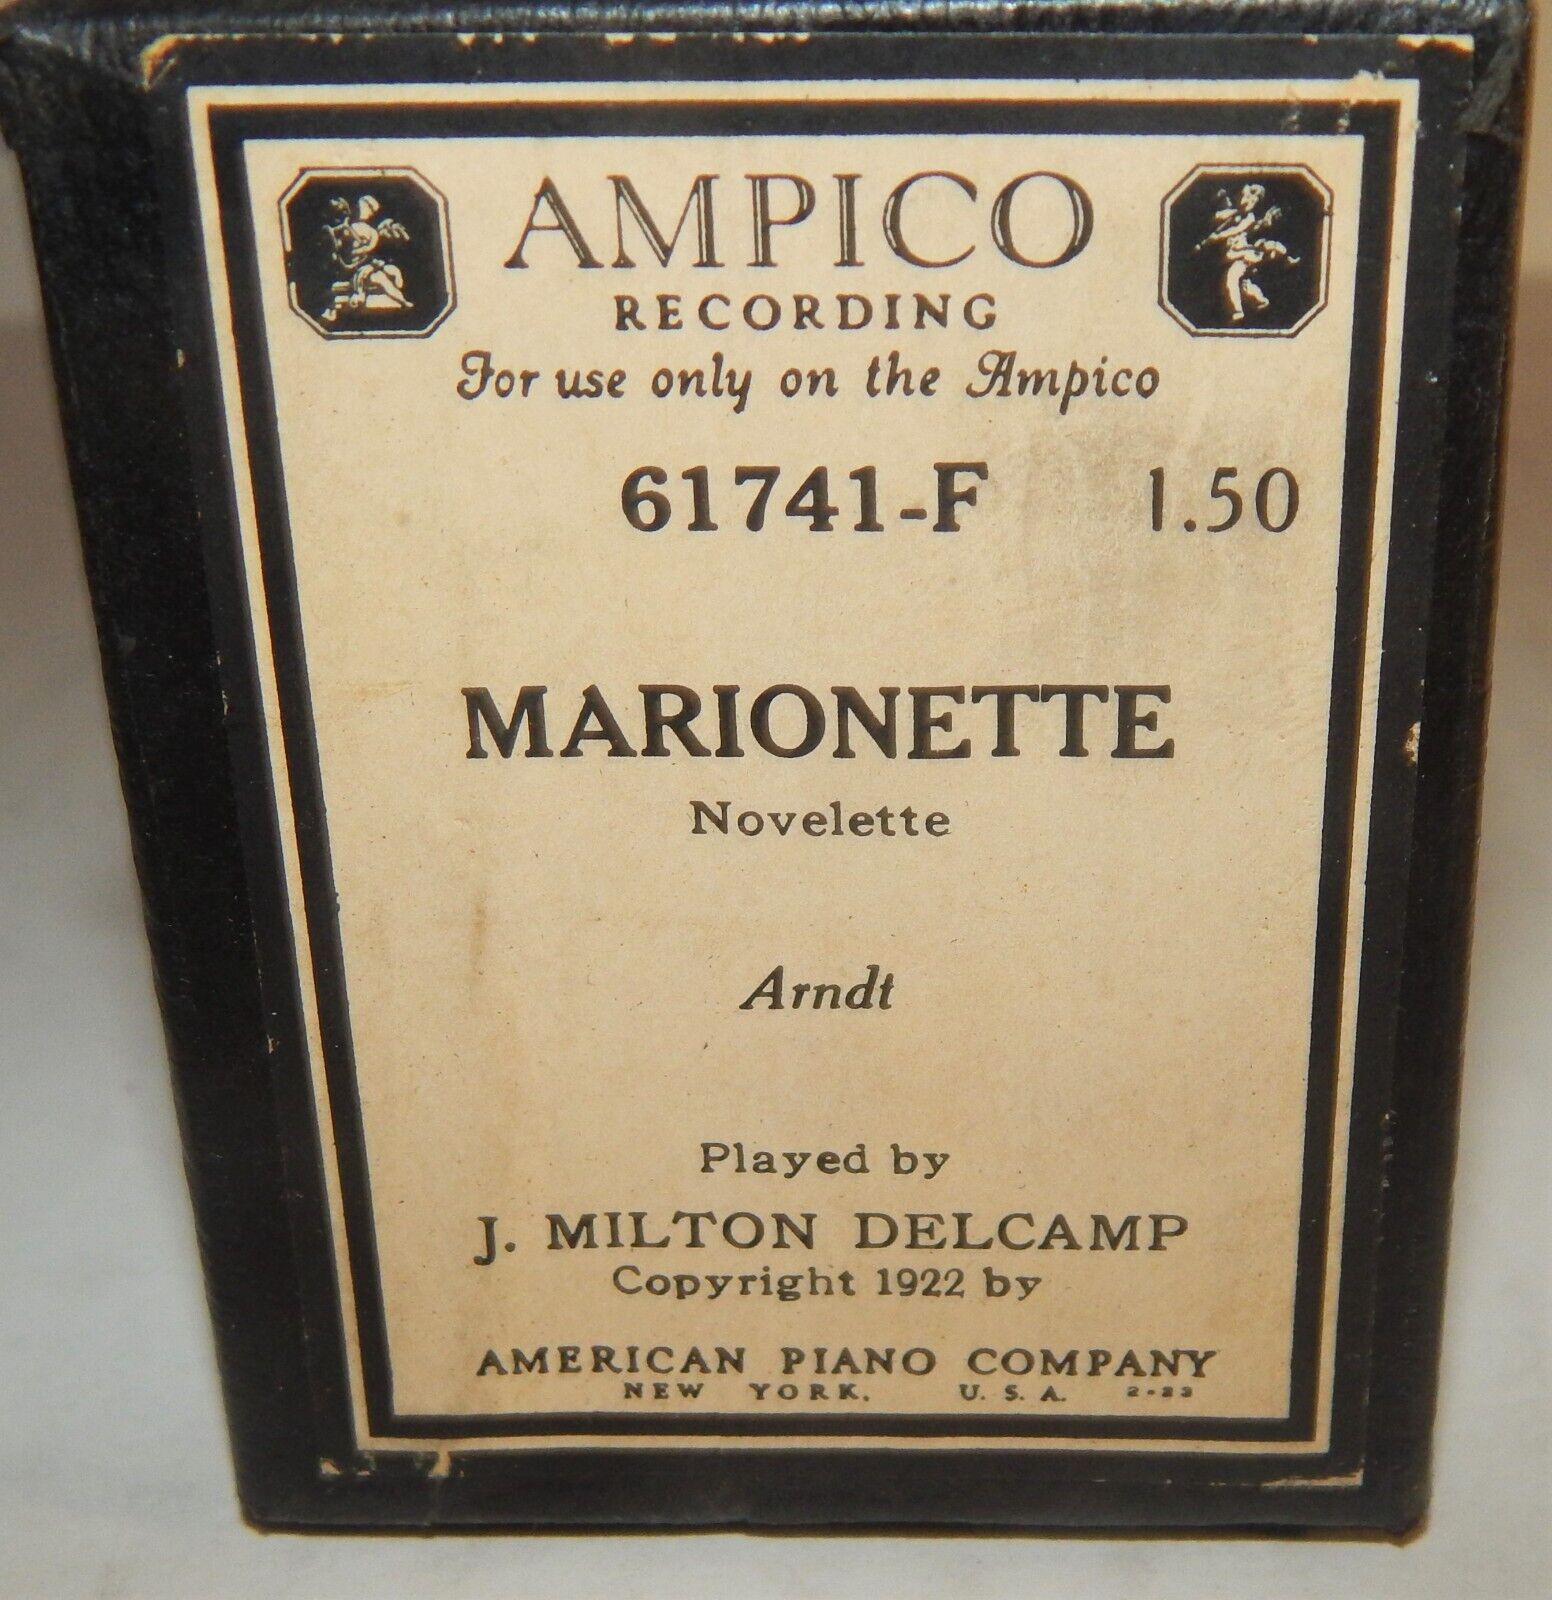 Ampico Player Piano Roll Marionette Novelette (arndt) 61741-f J Milton Delcamp